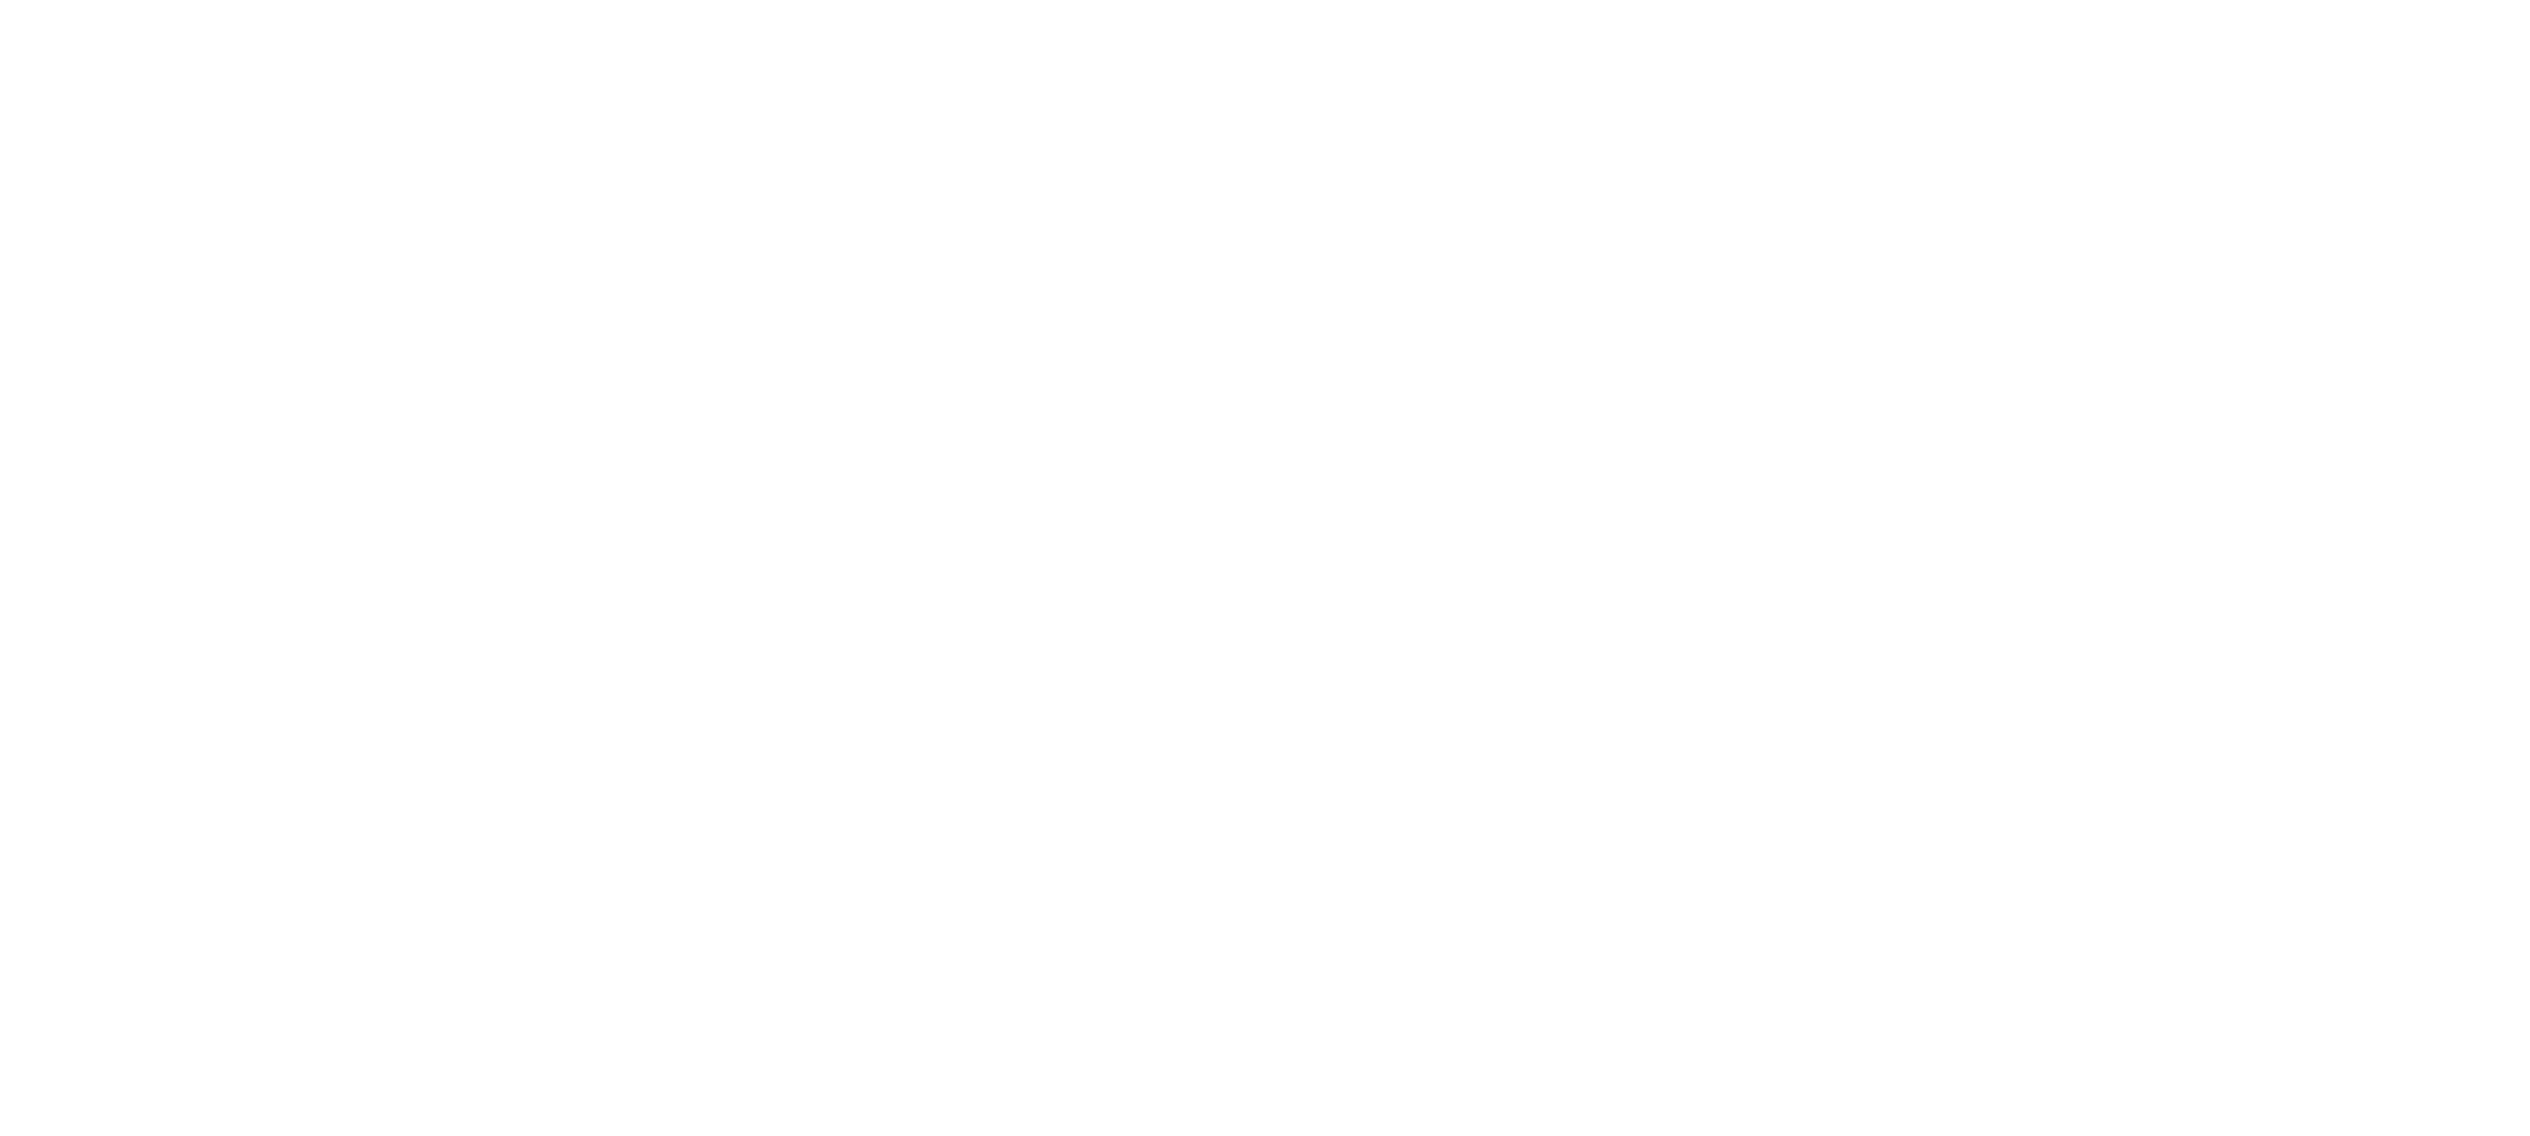 Door of Exploration